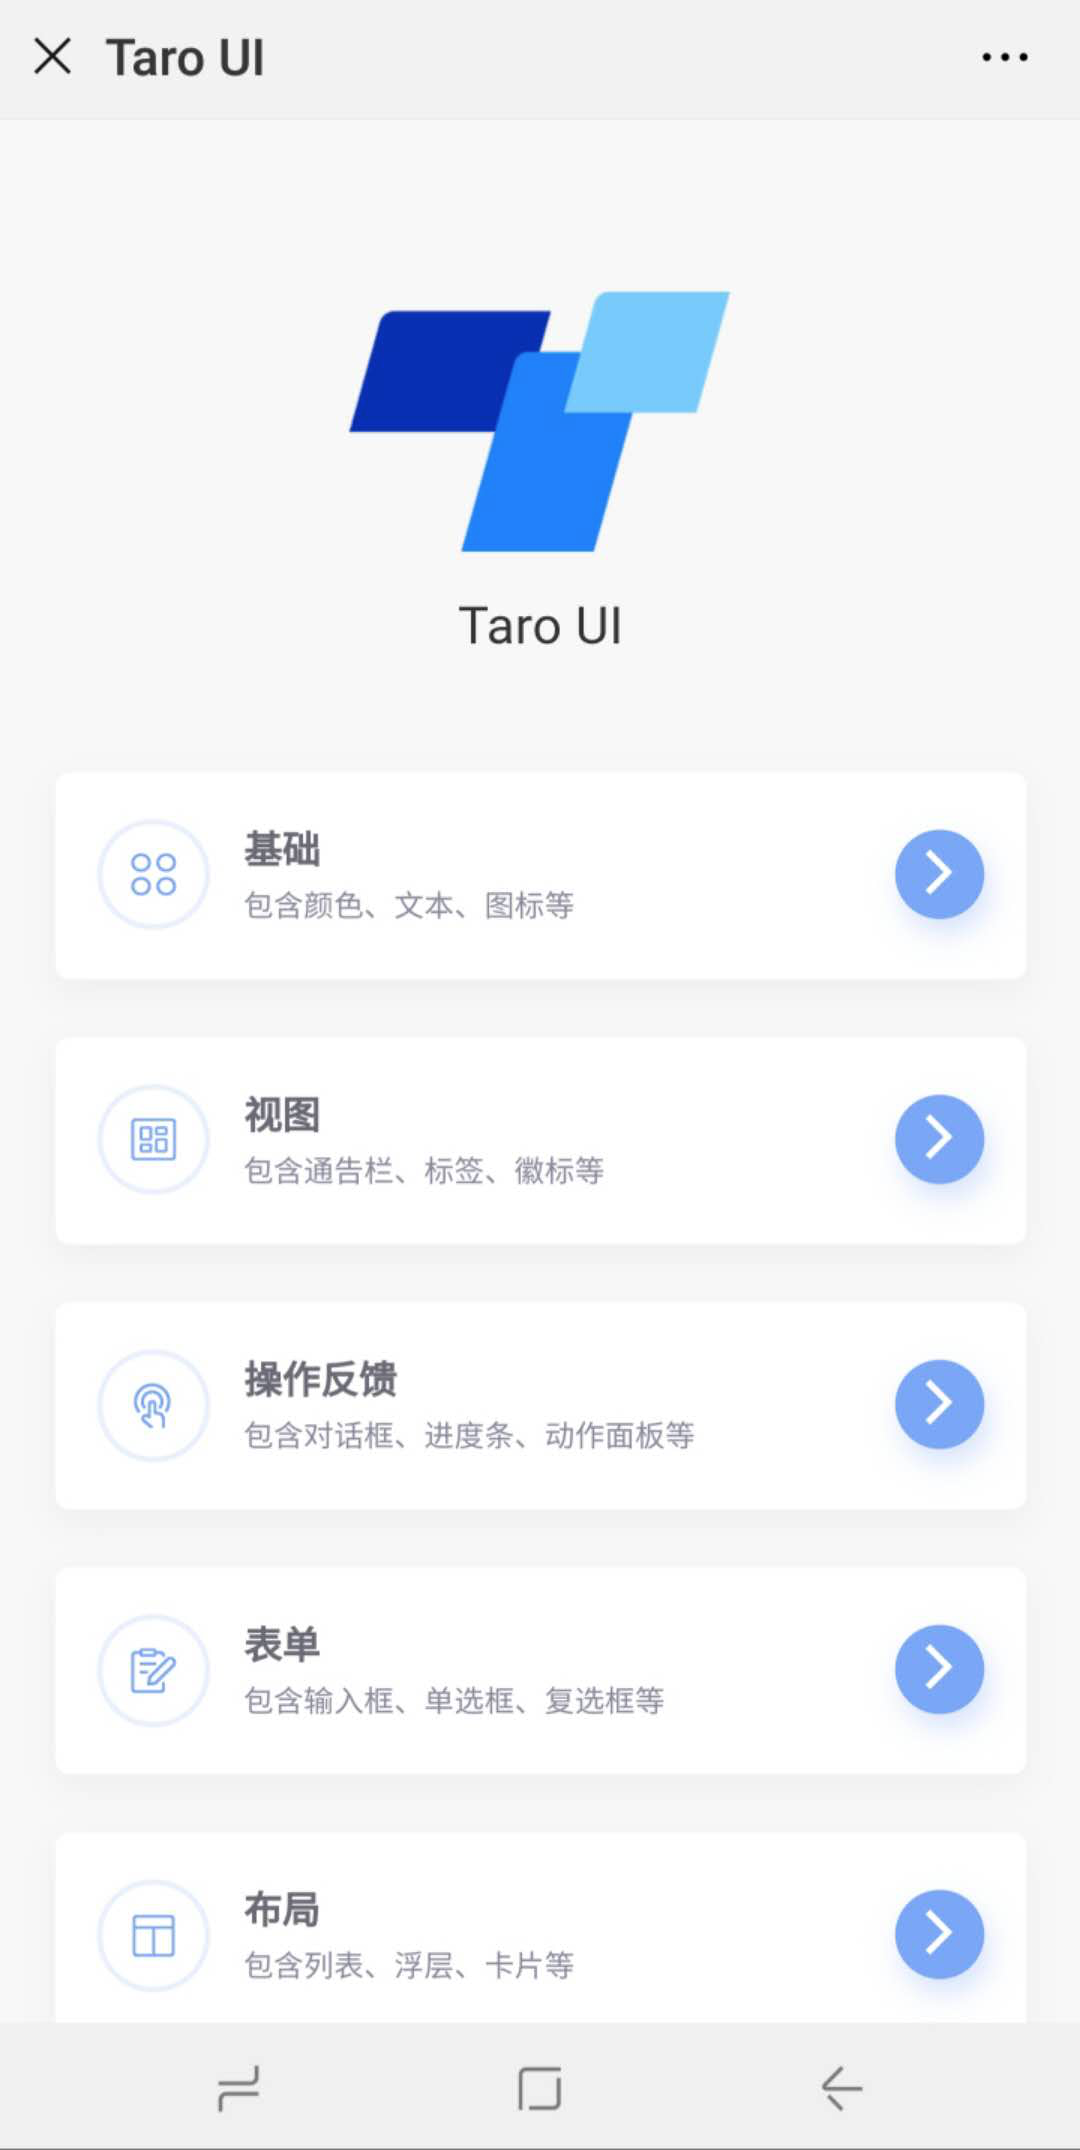 京东凹凸实验室开源多端适配的 UI 组件库 Taro UI